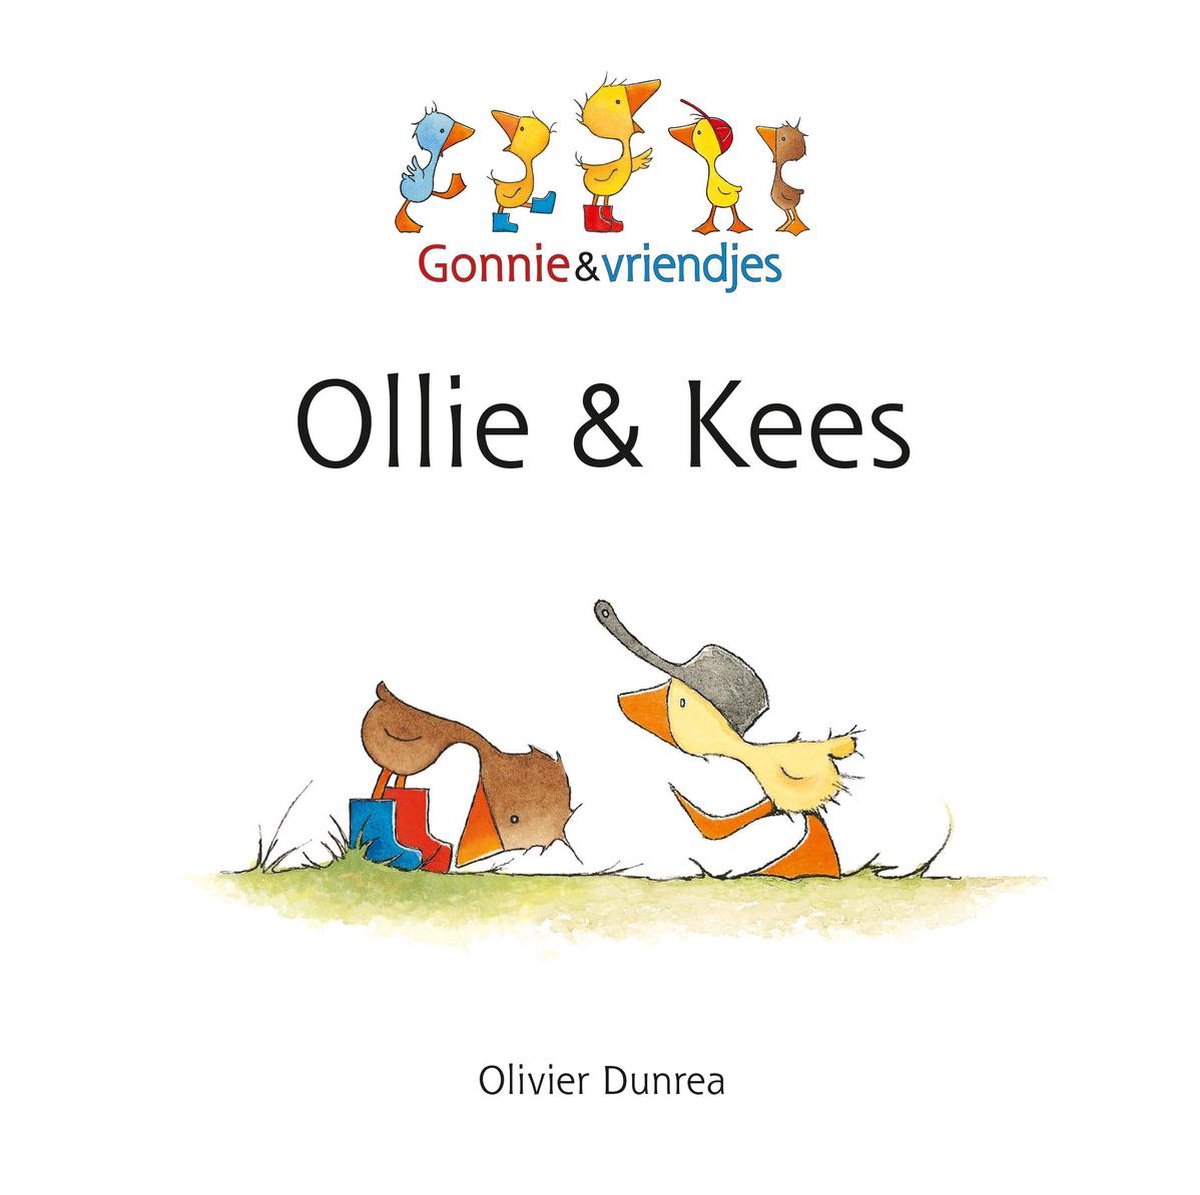 Gonnie & vriendjes - Ollie & Kees